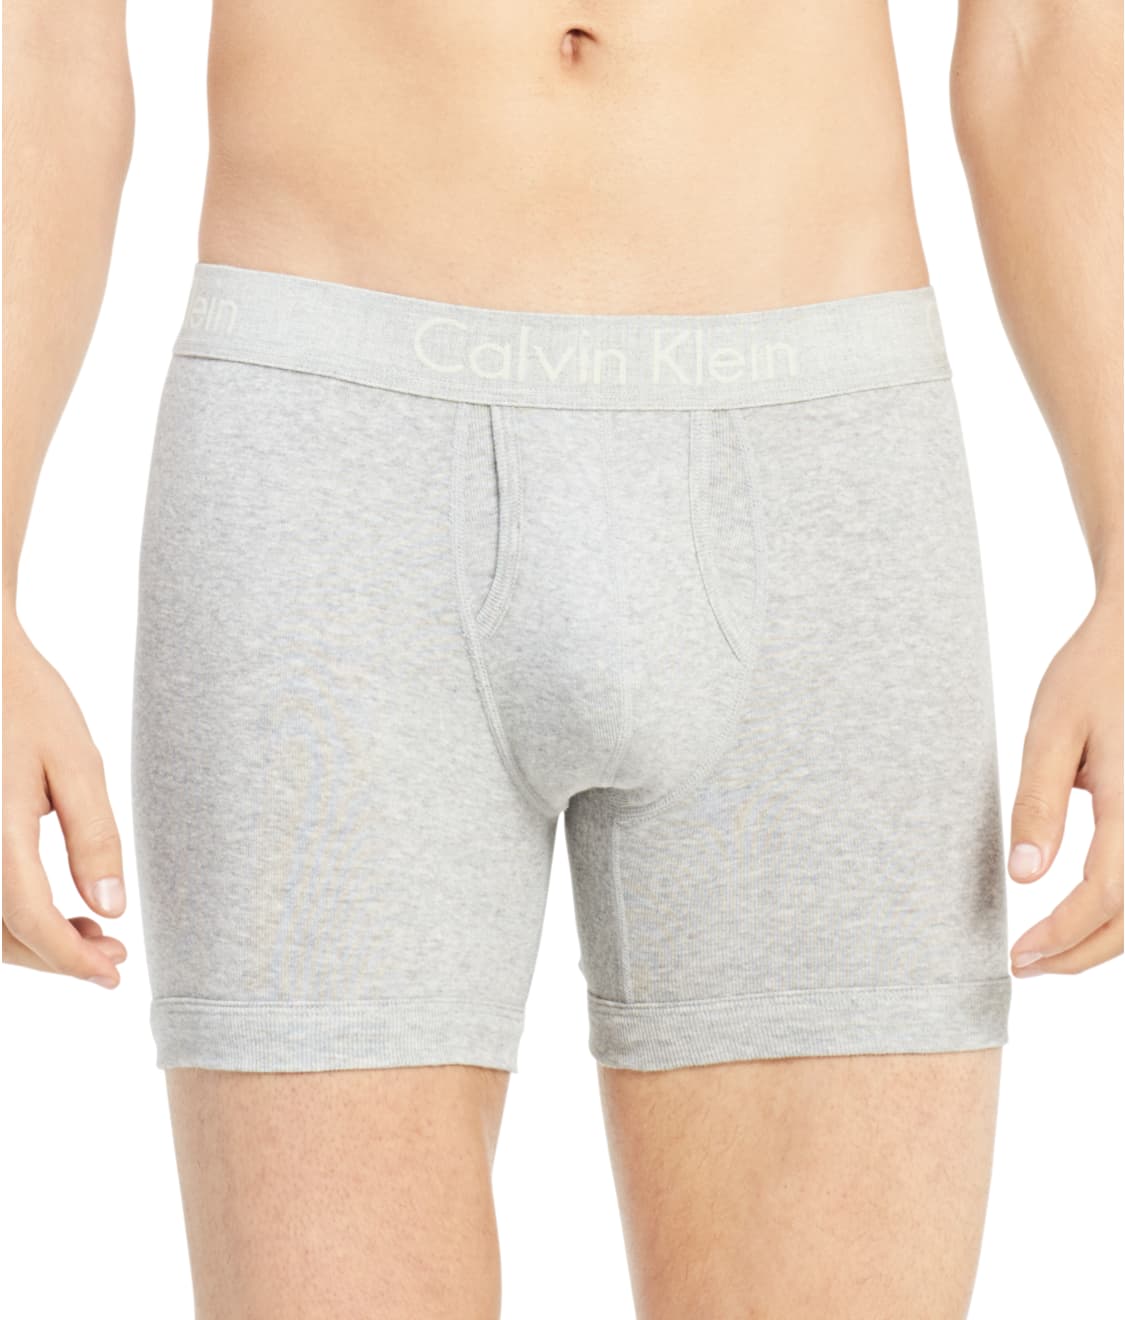 Calvin Klein Cotton Body Boxer Brief & Reviews | Bare Necessities ...